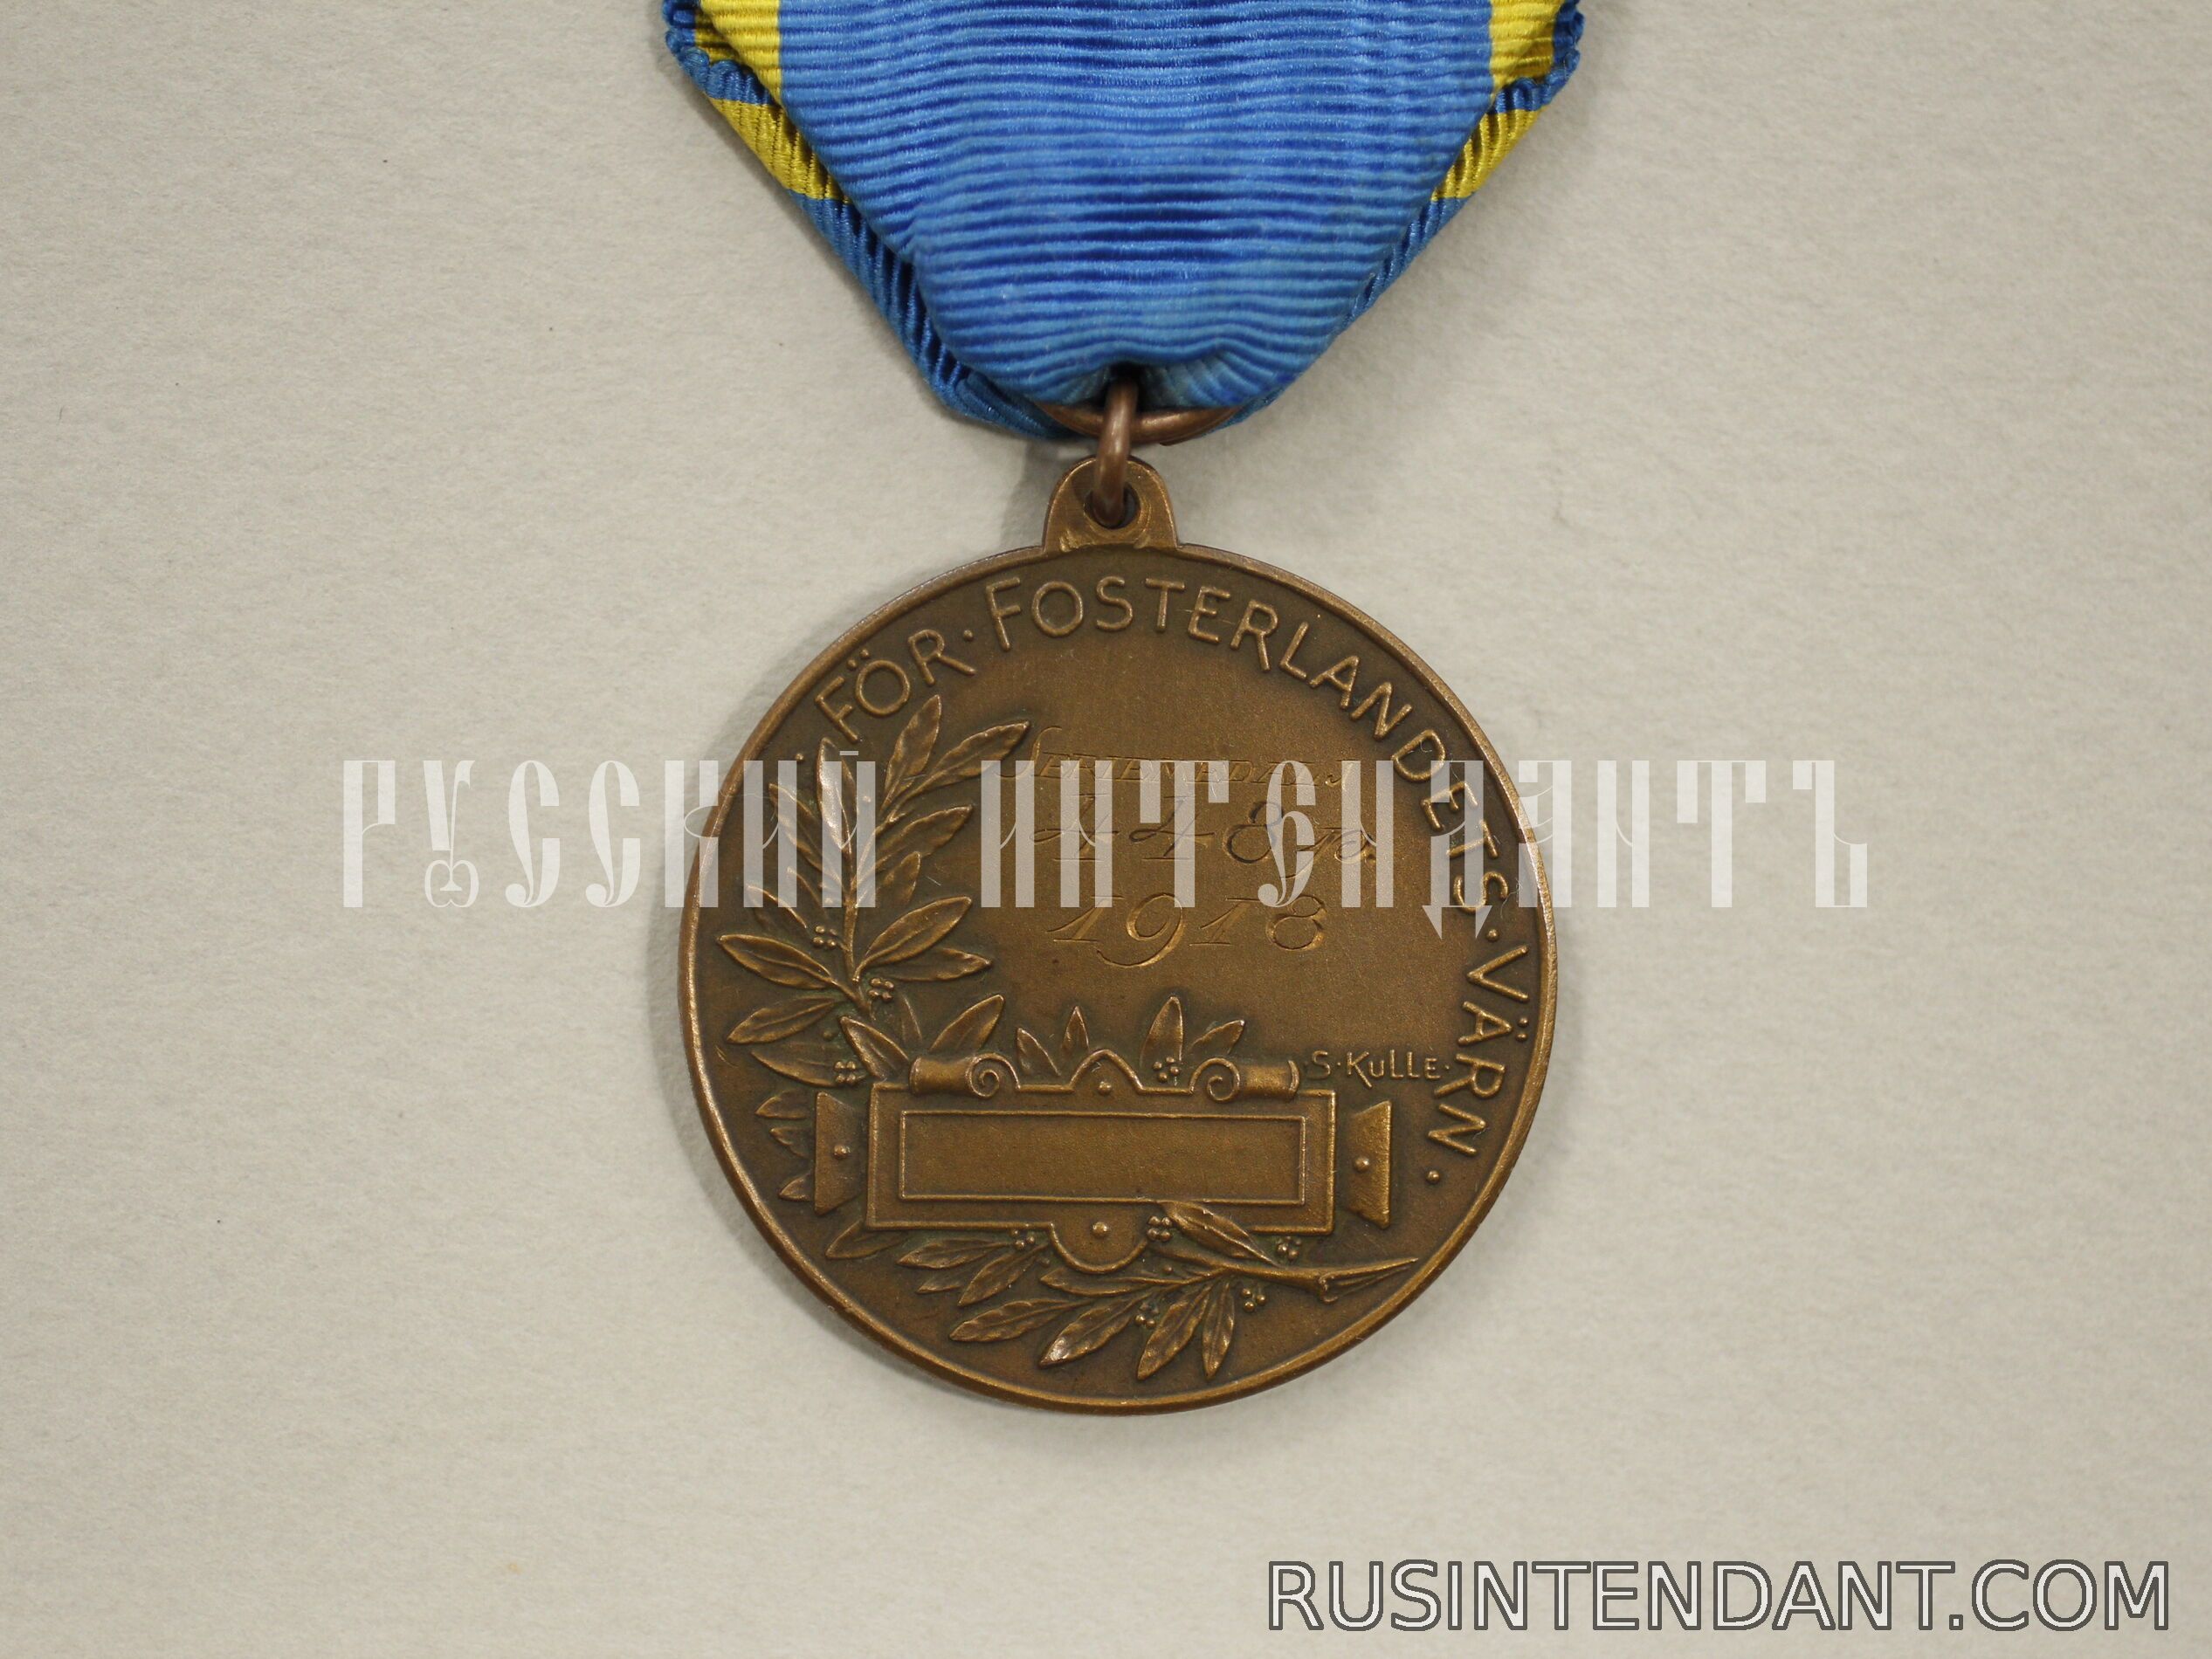 Фото 2: Медаль Центральной стрелковой ассоциации Стокгольма 